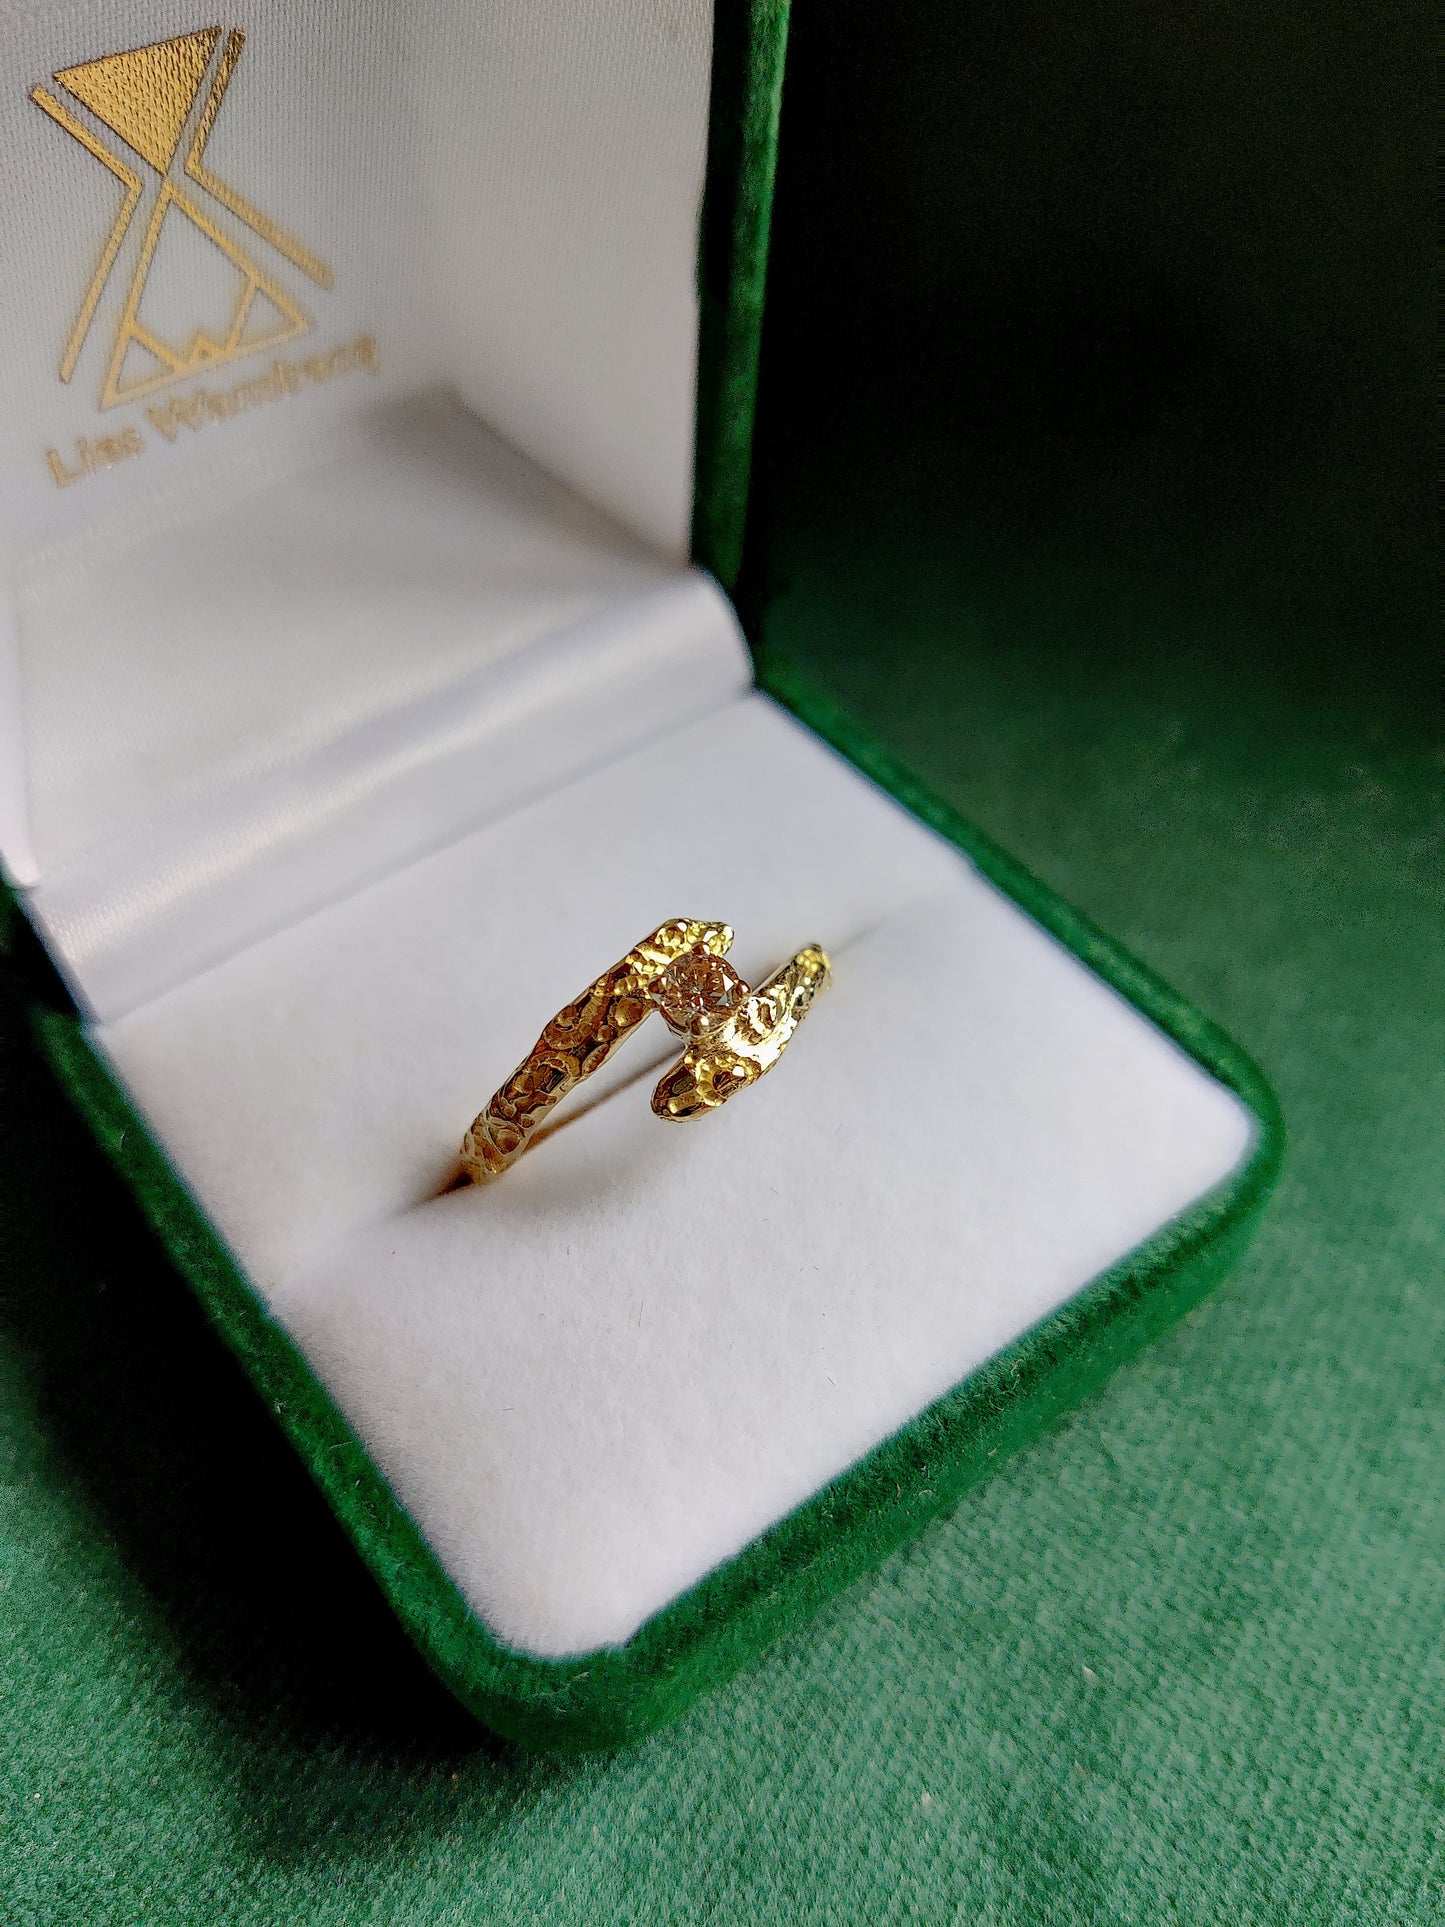 De diamant is gezet in pootjes en staat tussen de open band van de ring. De ring heeft een oriëntaals motief. 